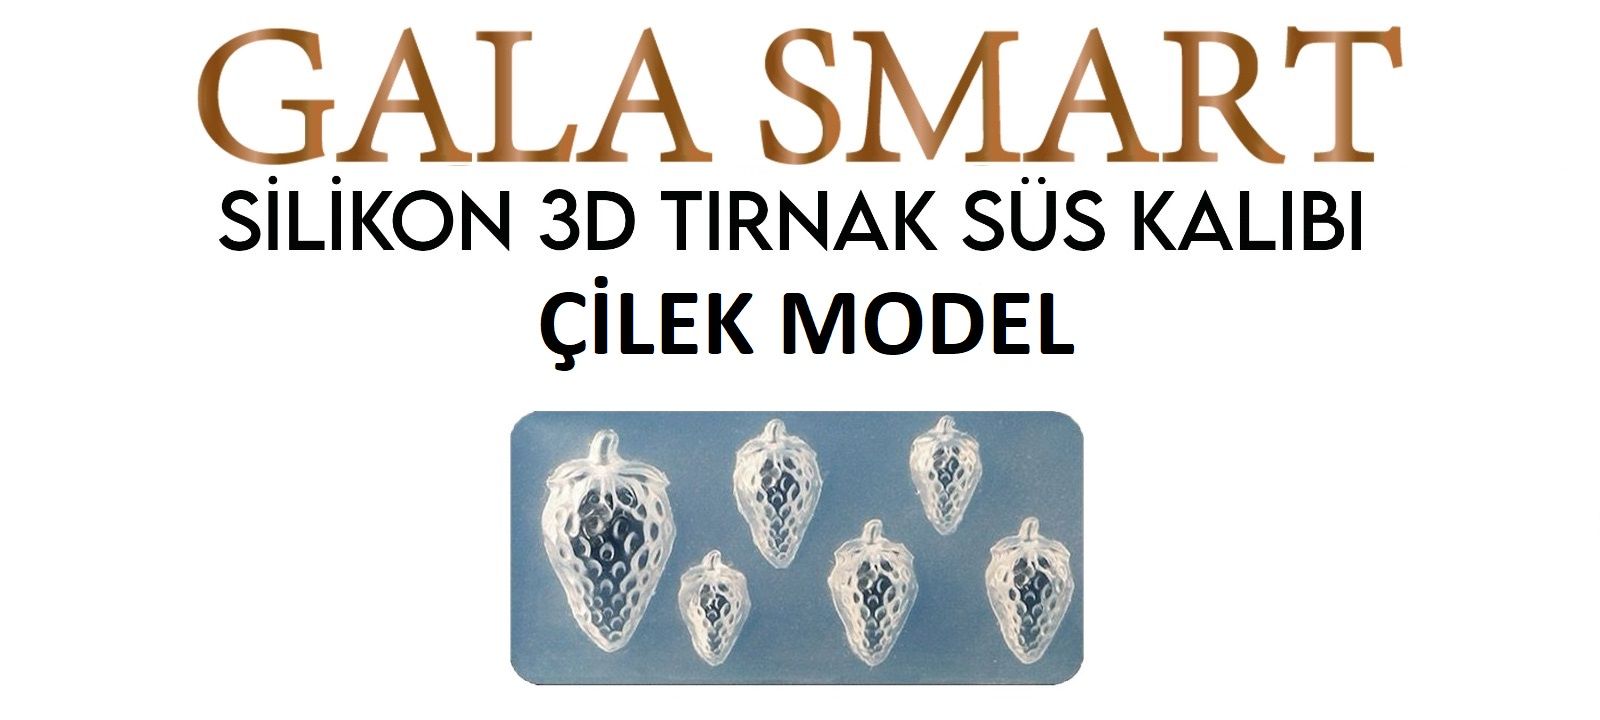 3D SİLİKON KALIP - ÇİLEK MODEL